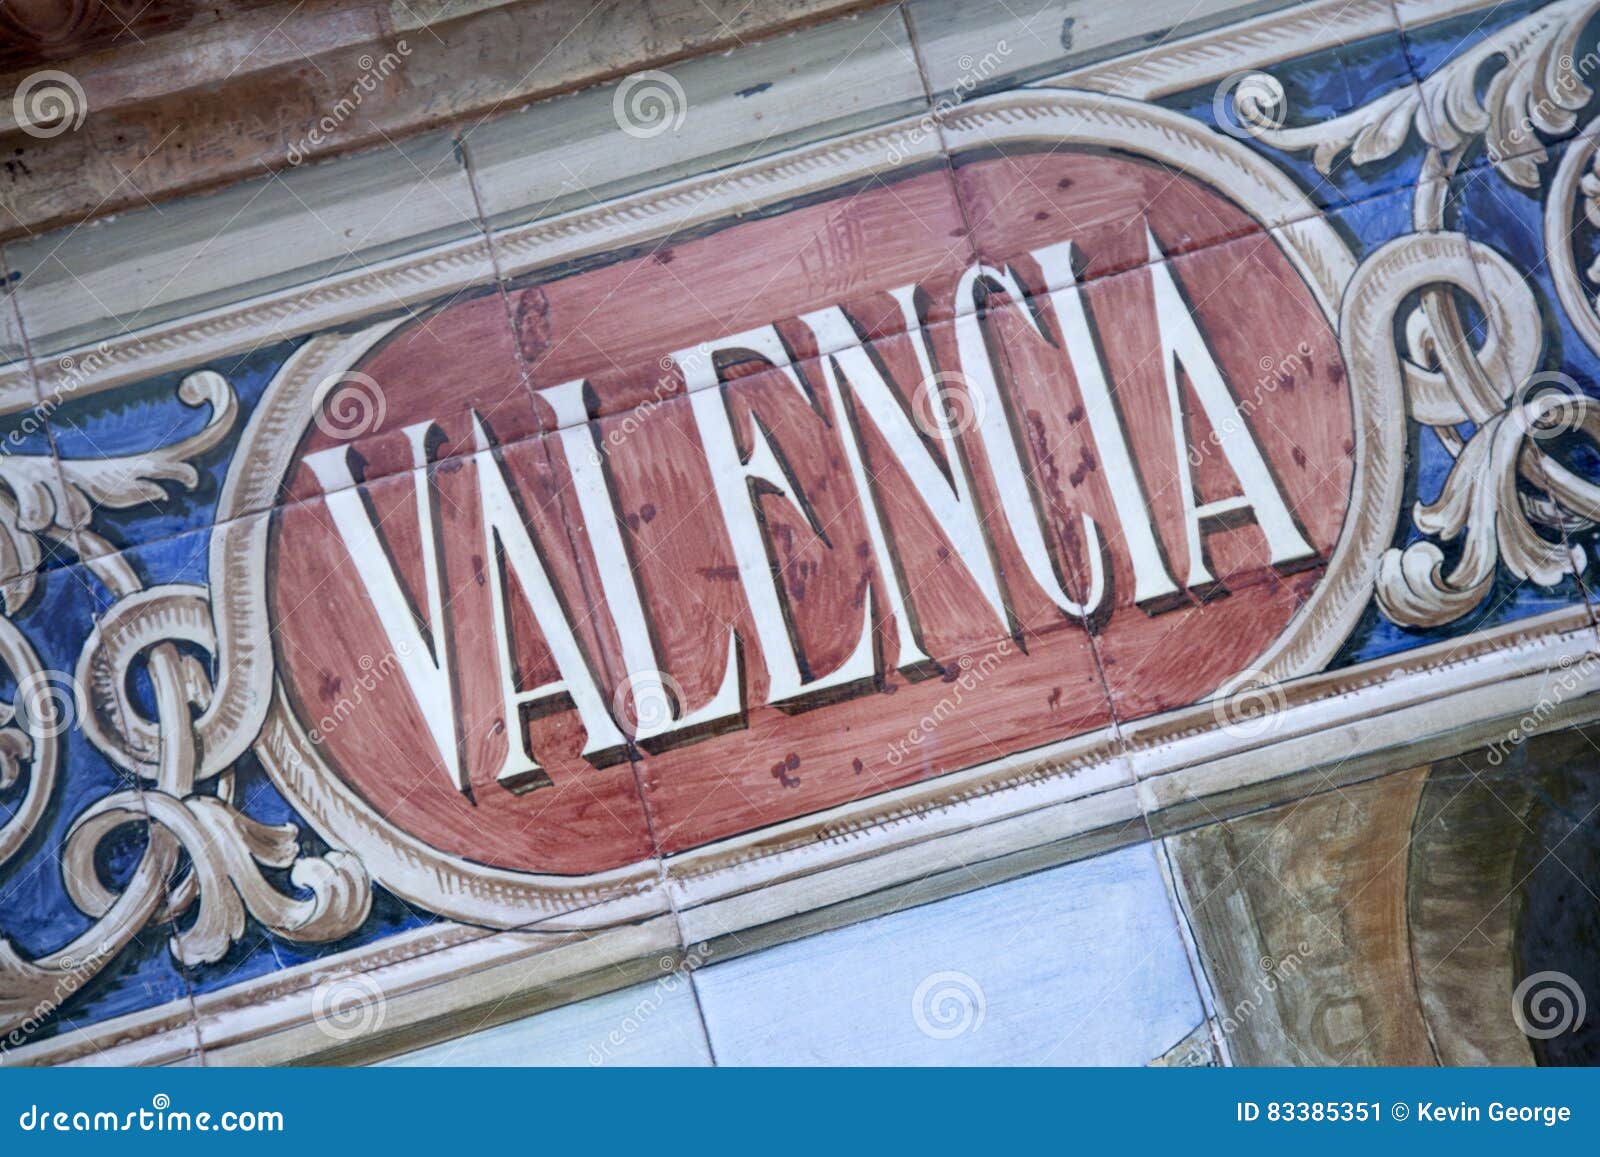 valencia, plaza de espana; seville